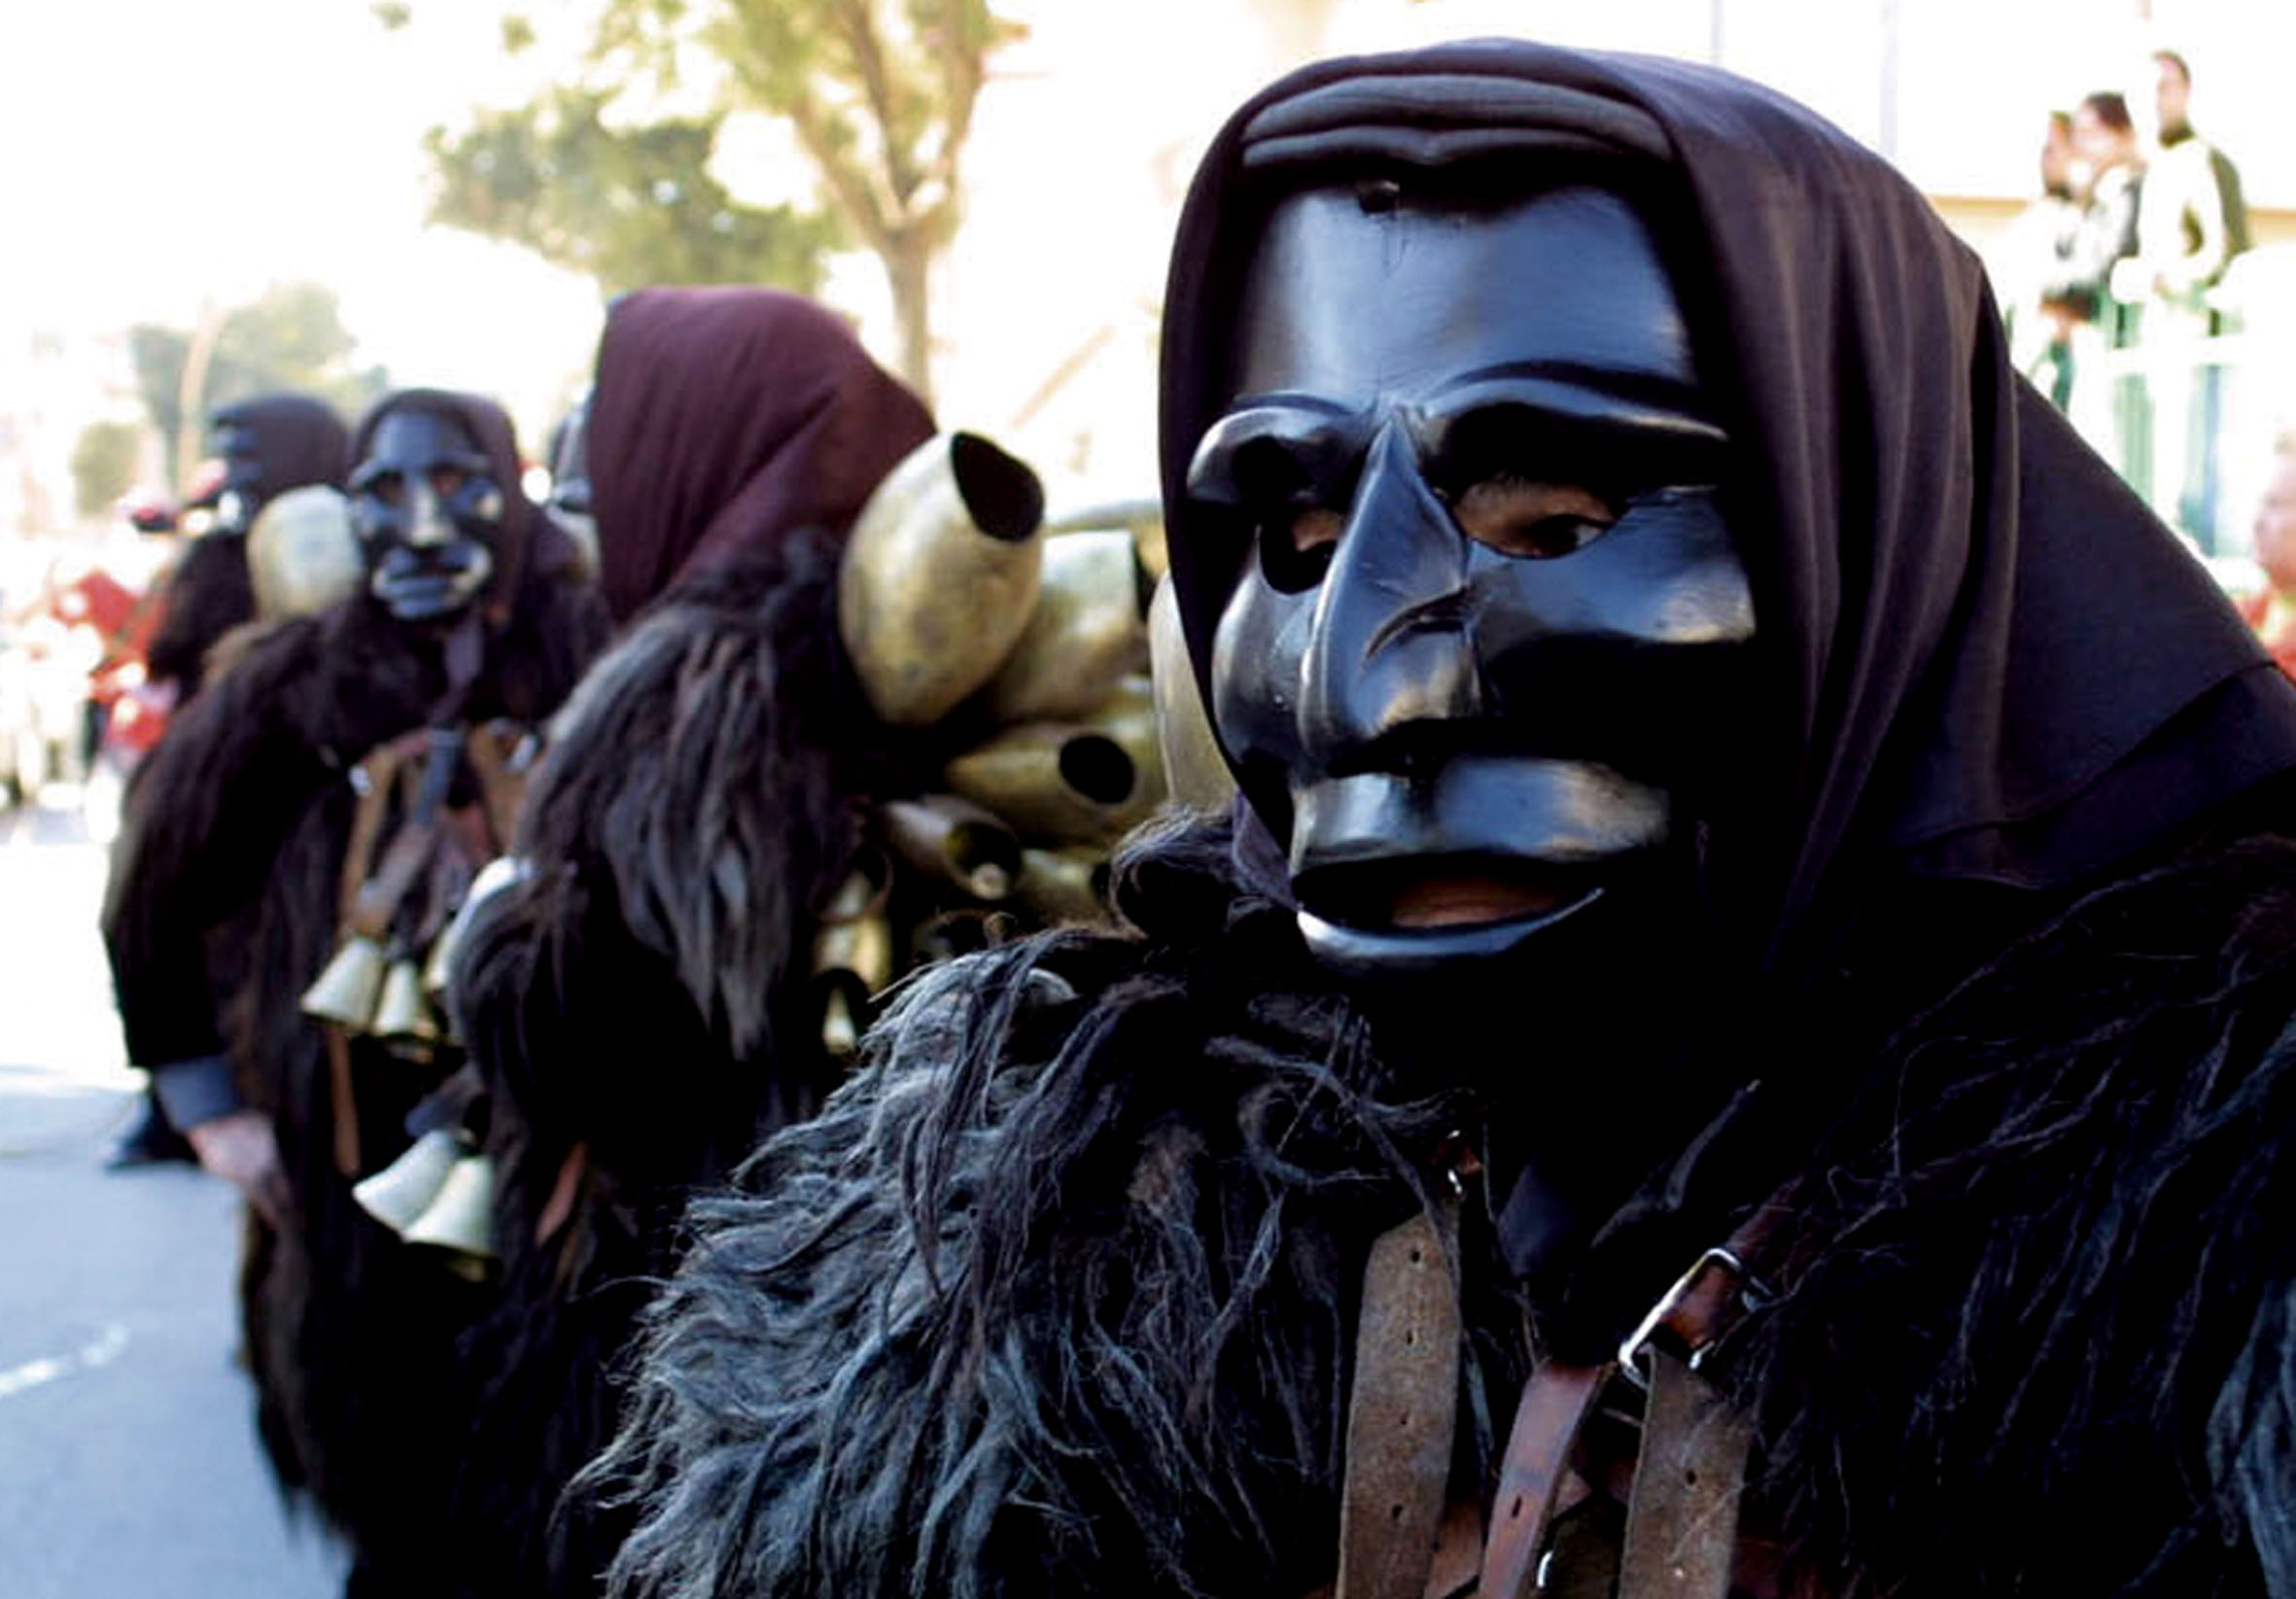 Maschera nera tipica del Carnevale di Mamoiada, Sardegna